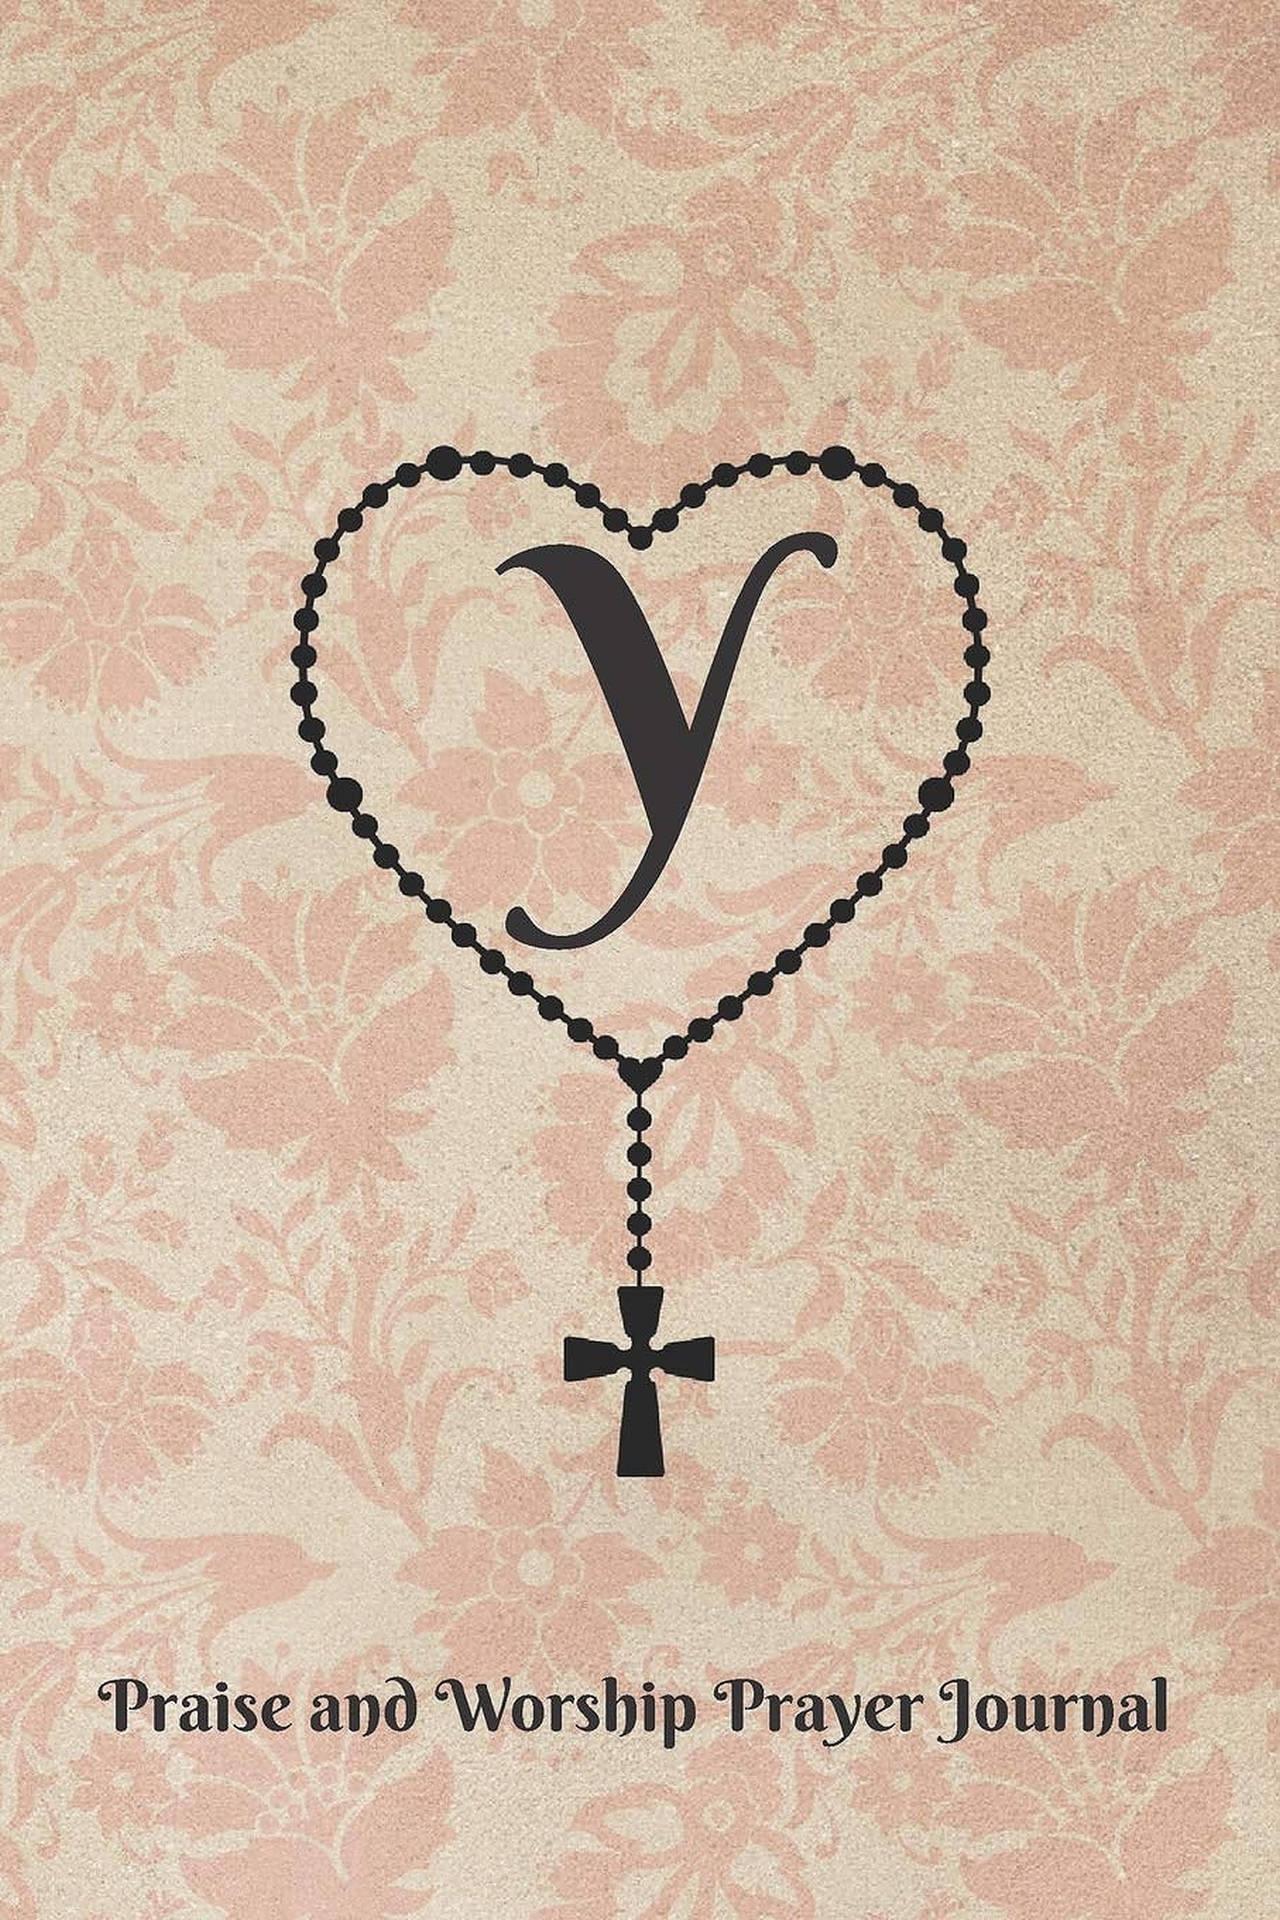 Letter Y Cover Prayer Journal Wallpaper